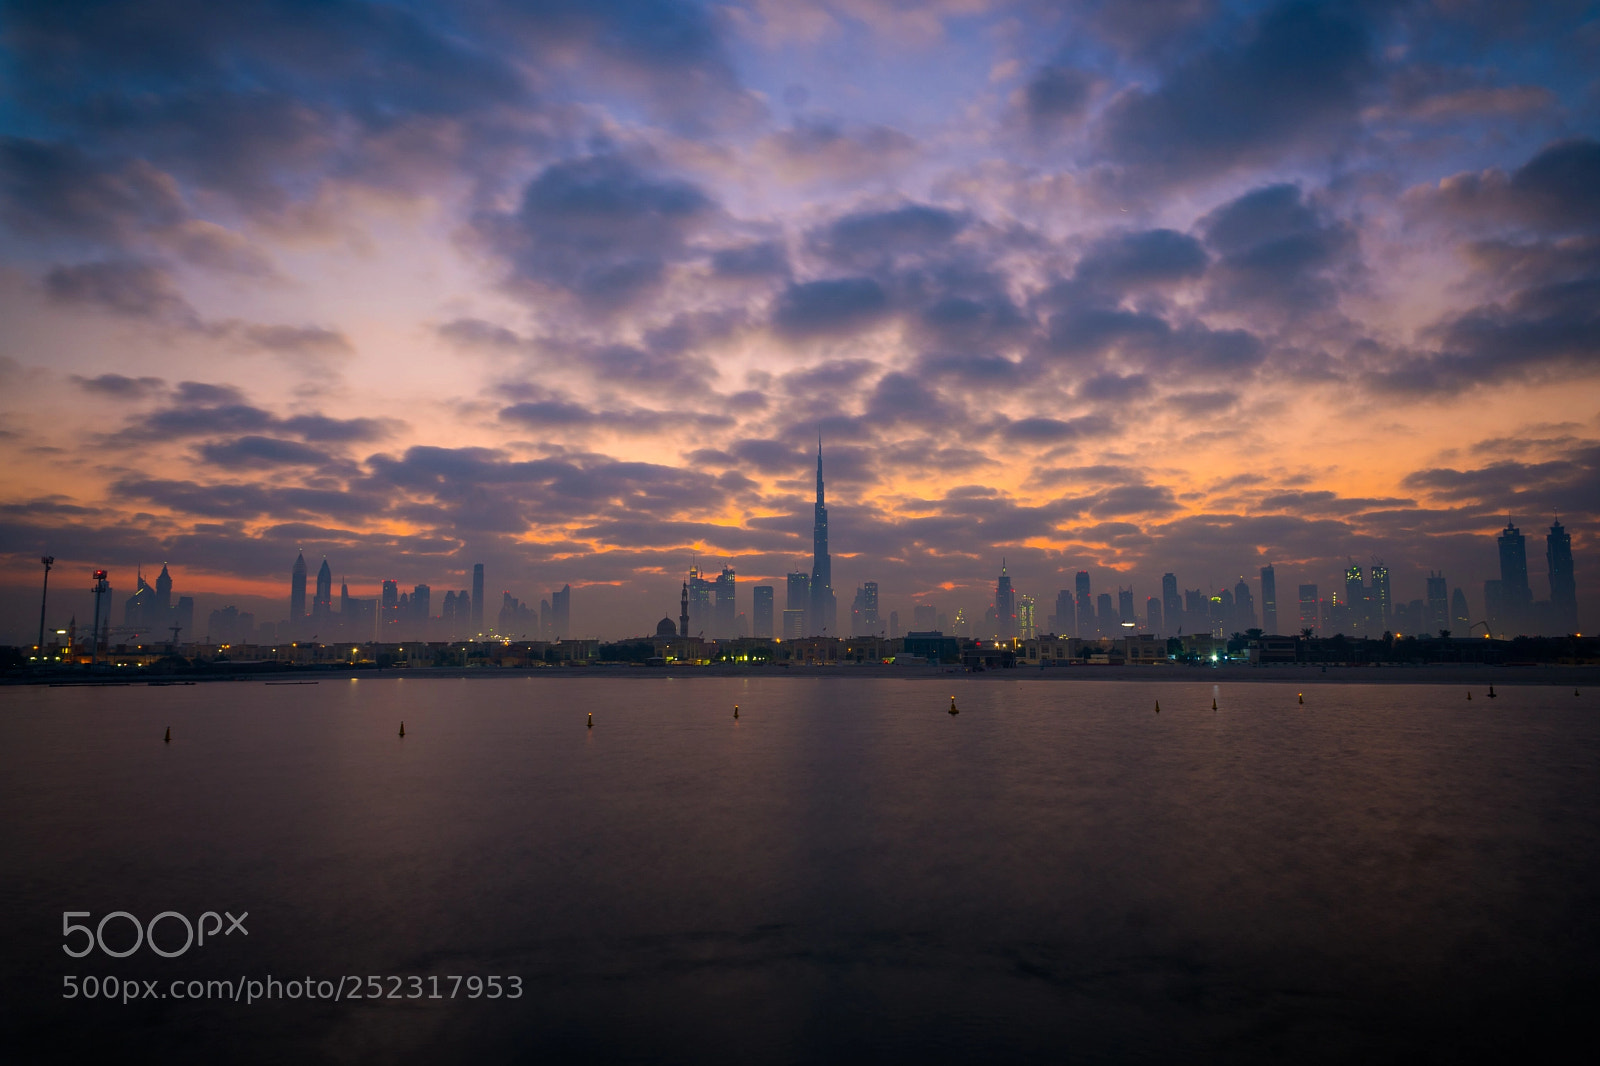 Sony a6300 sample photo. Dubai sunrise photography